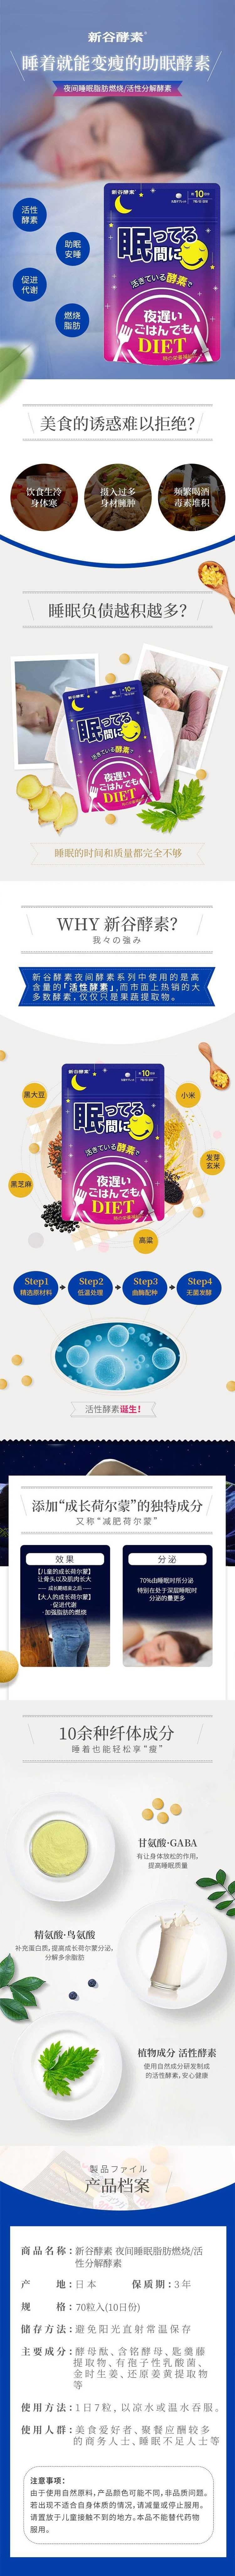 【日本直效郵件】SHINYA KOSO新谷酵素 夜間睡眠脂肪燃燒/活性分解酵素70粒10日份